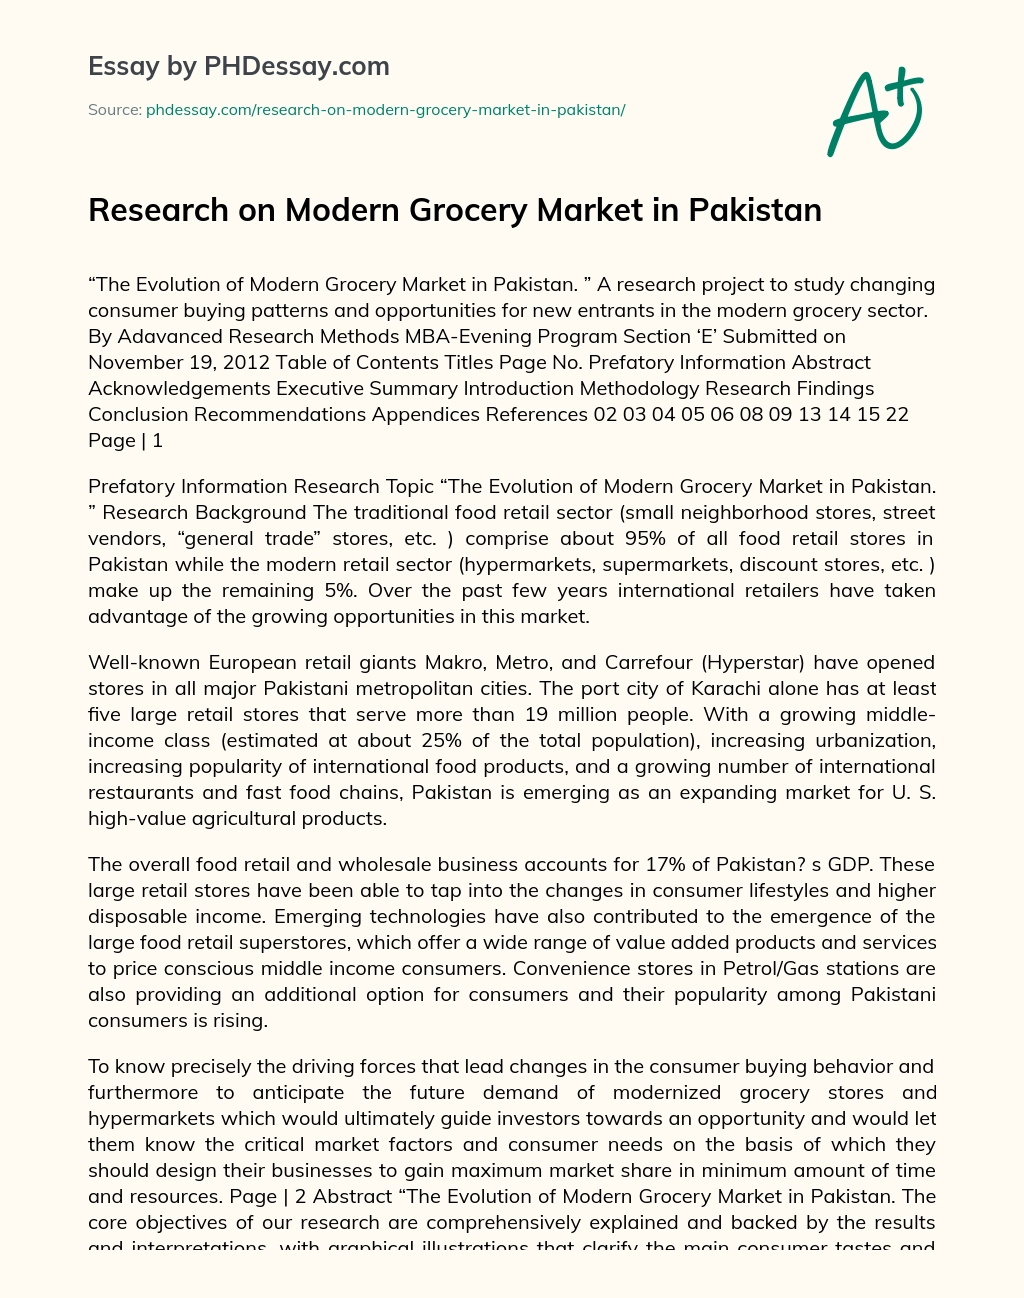 Research on Modern Grocery Market in Pakistan essay